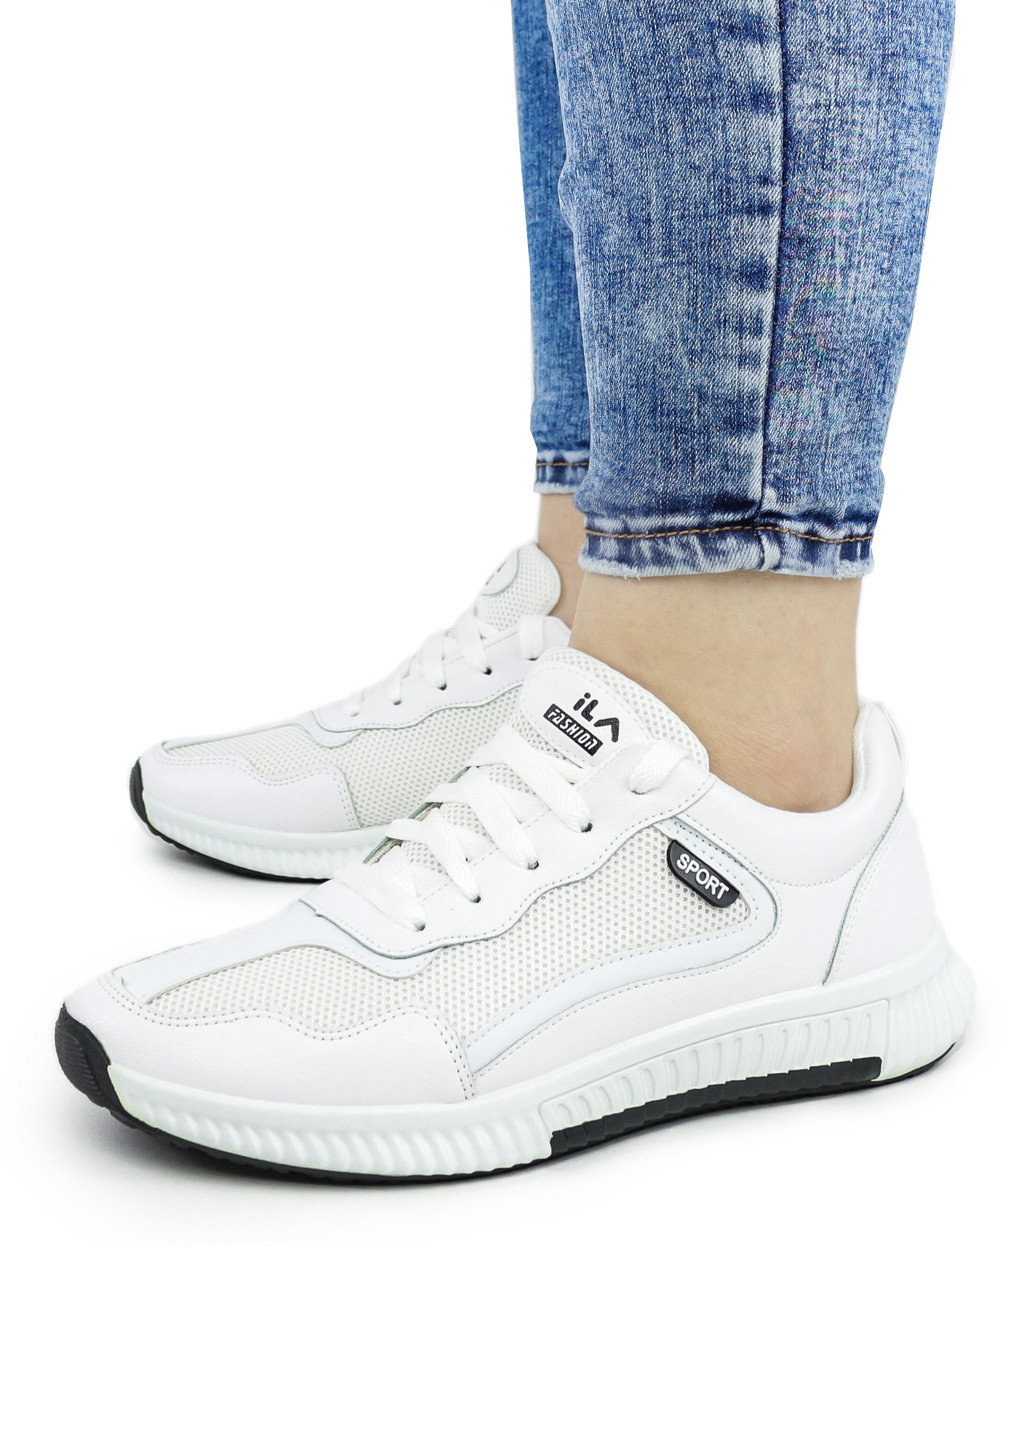 Белые демисезонные кроссовки женские ila sport белые демисезонные 1340064574 Dual